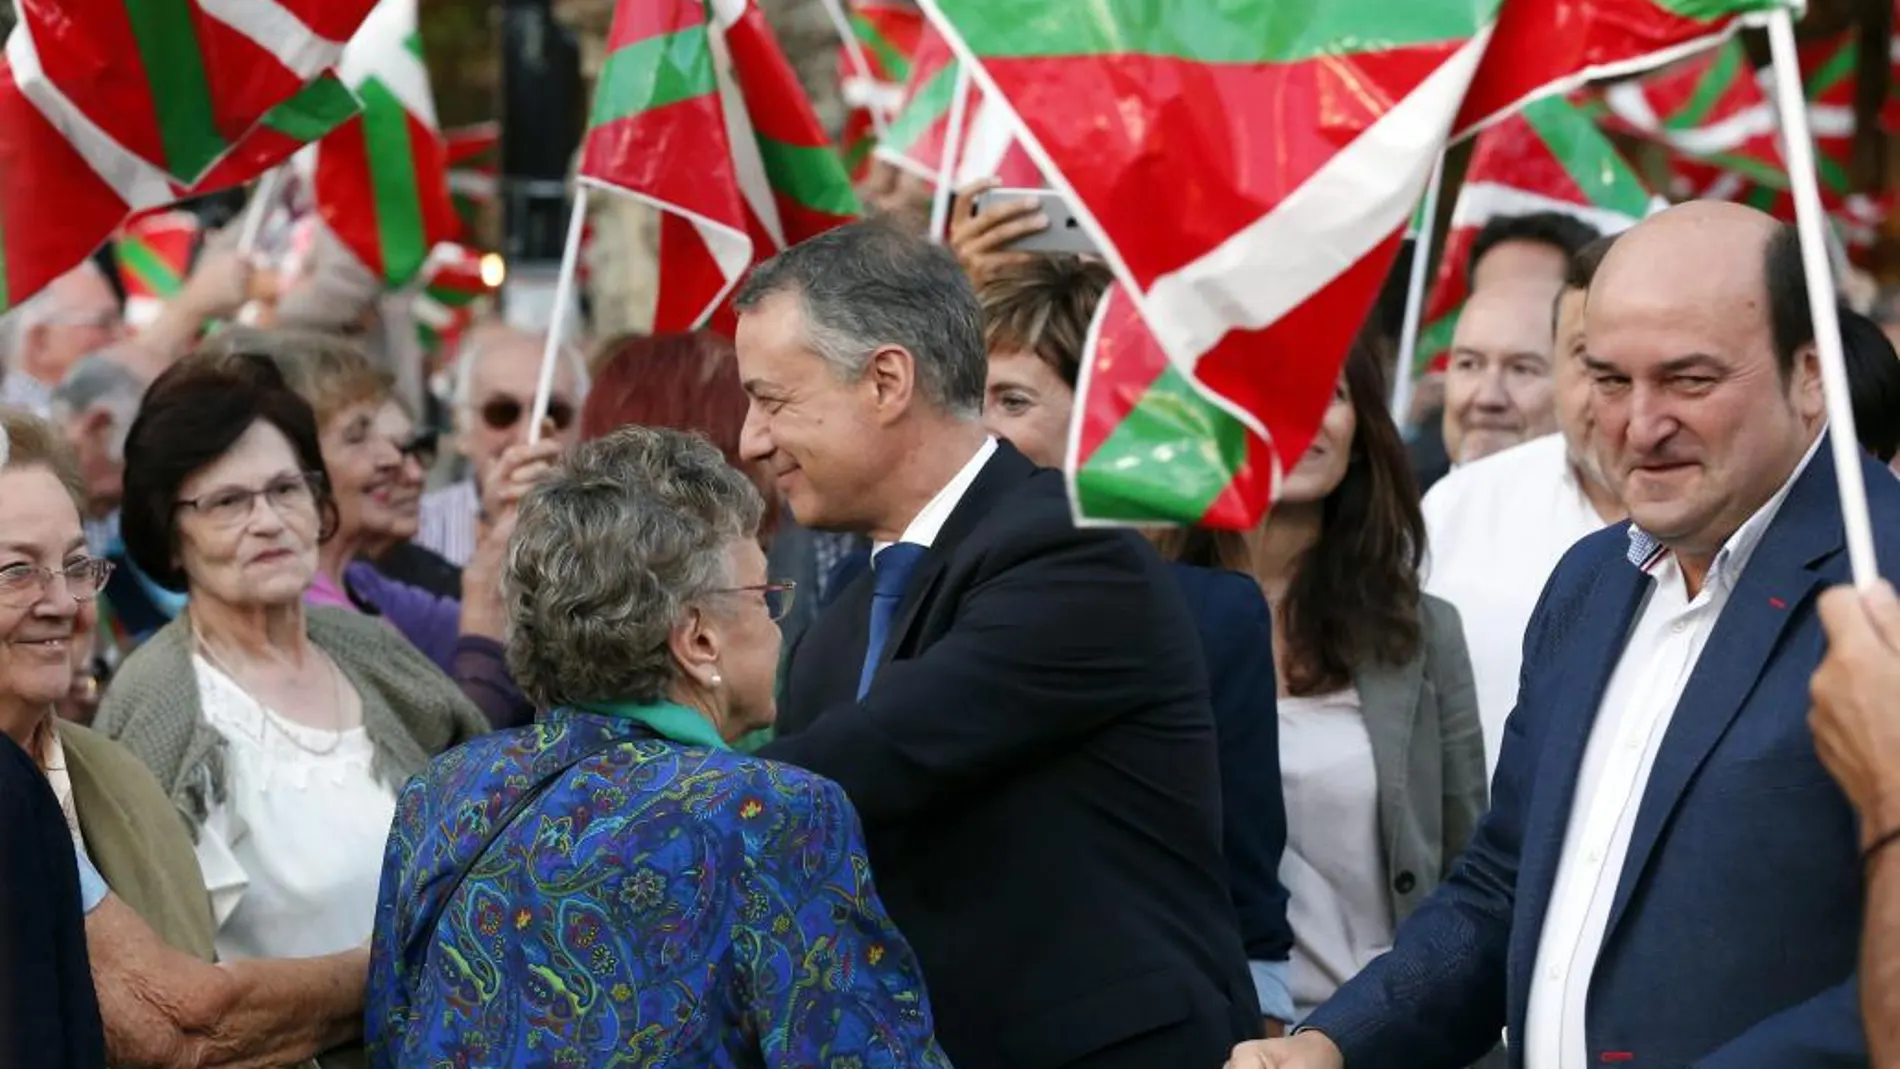 El lehendakari y candidato a la reelección por el PNV, Iñigo Urkullu, junto al presidente del partido, Andoni Ortuza, en el acto de cierre de la campaña electoral, en El Arenal de Bilbao